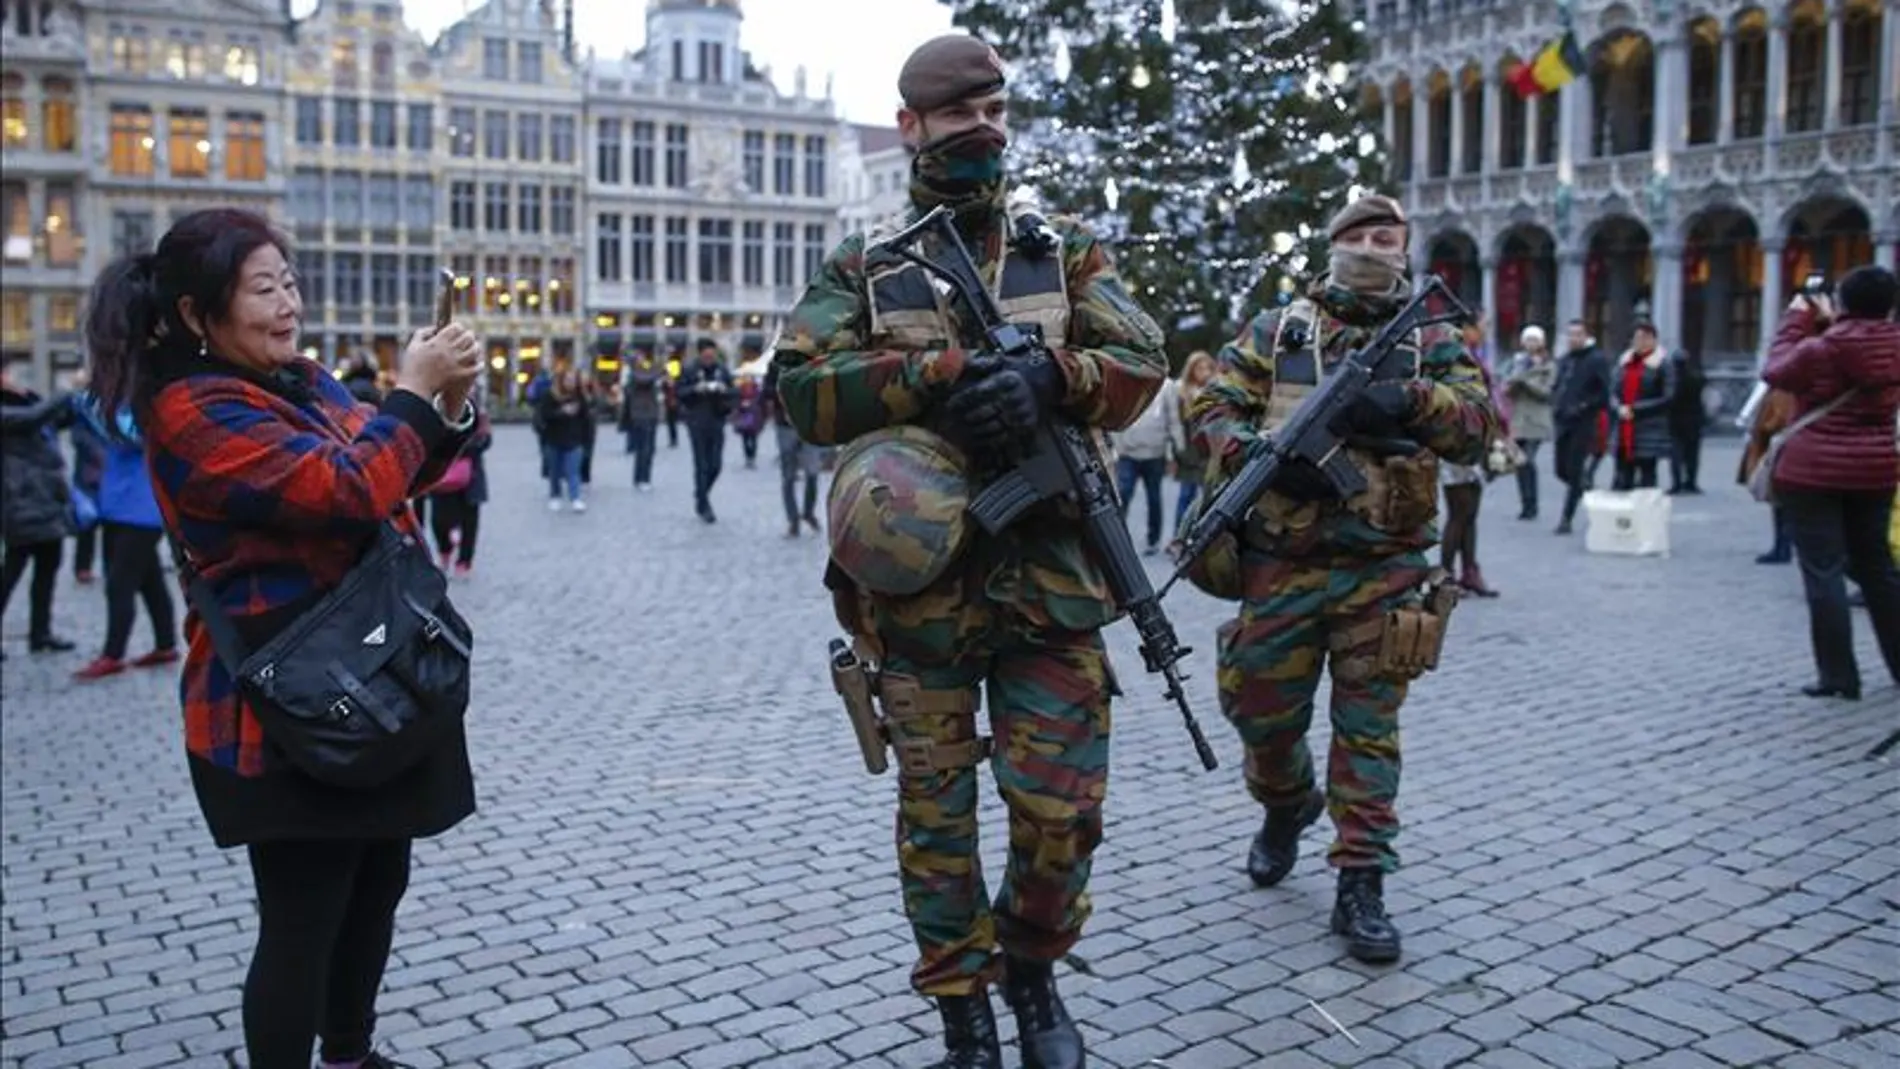 Dos soldados patrullan en un mercado navideño en Bruselas, Bélgica.